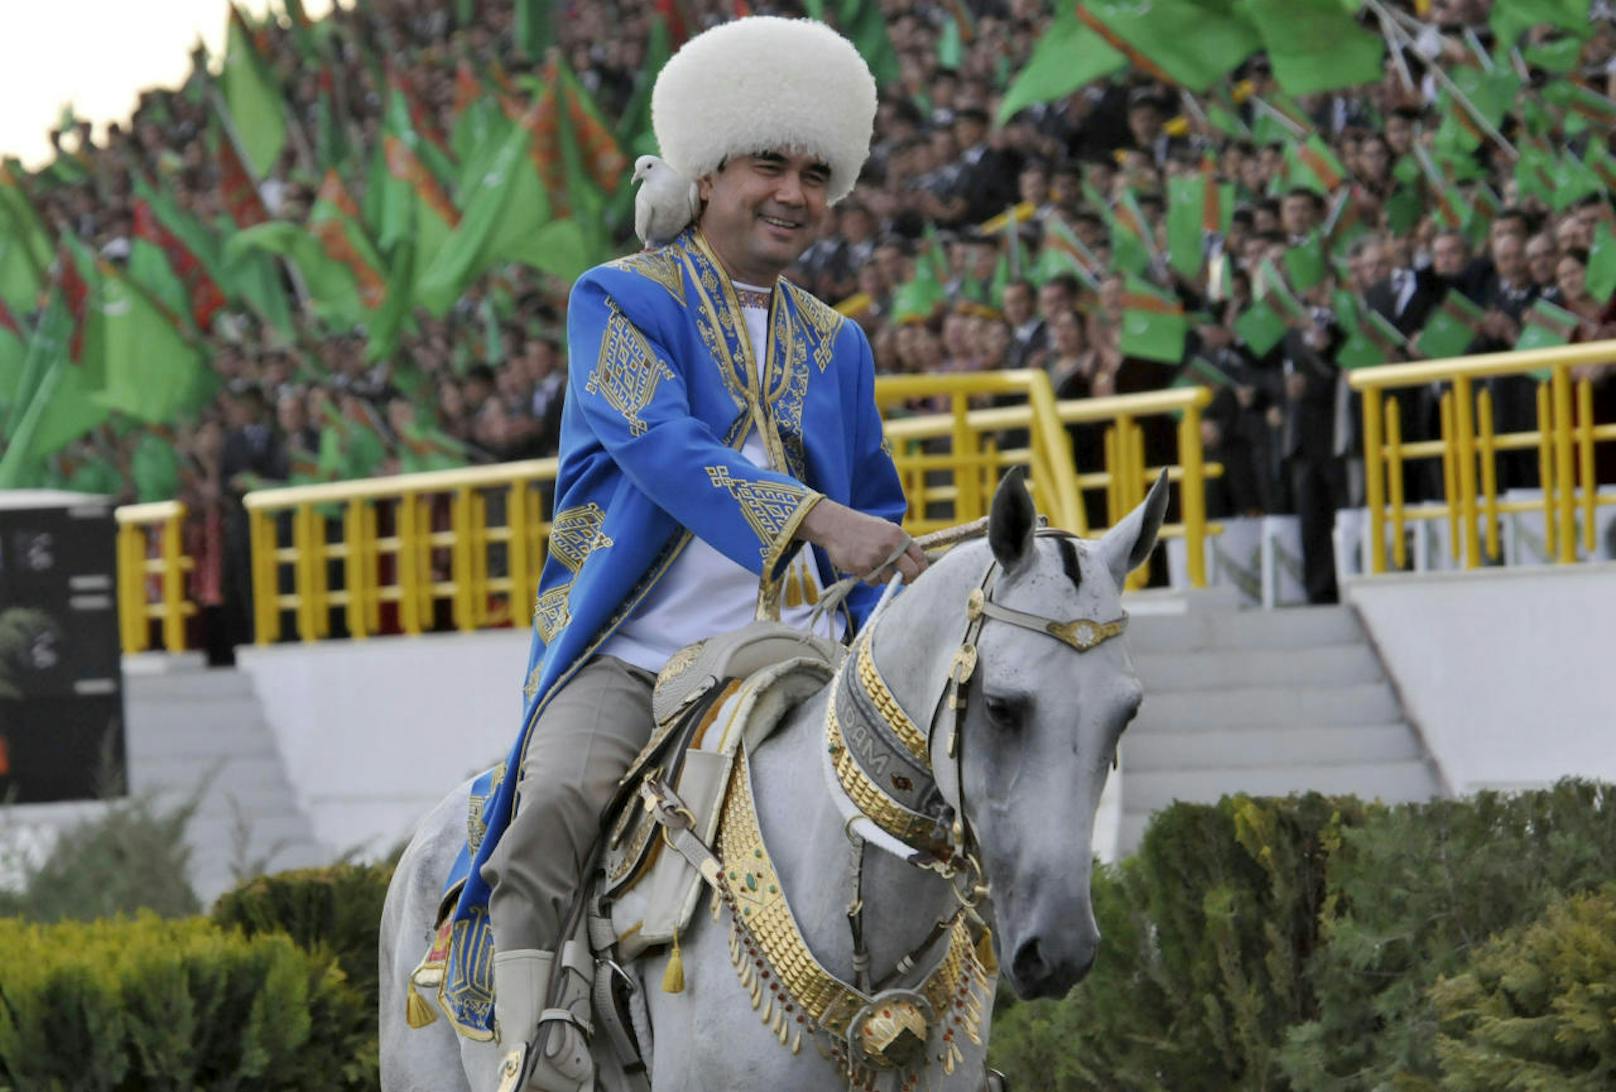 Gurbanguli Berdymuhamedov präsentiert sich gern in der nomadischen Tradition der Turkmenen. Besonders gern auf dem Rücken eines Pferdes. Er hat sogar Gedichte für seine Pferde geschrieben.